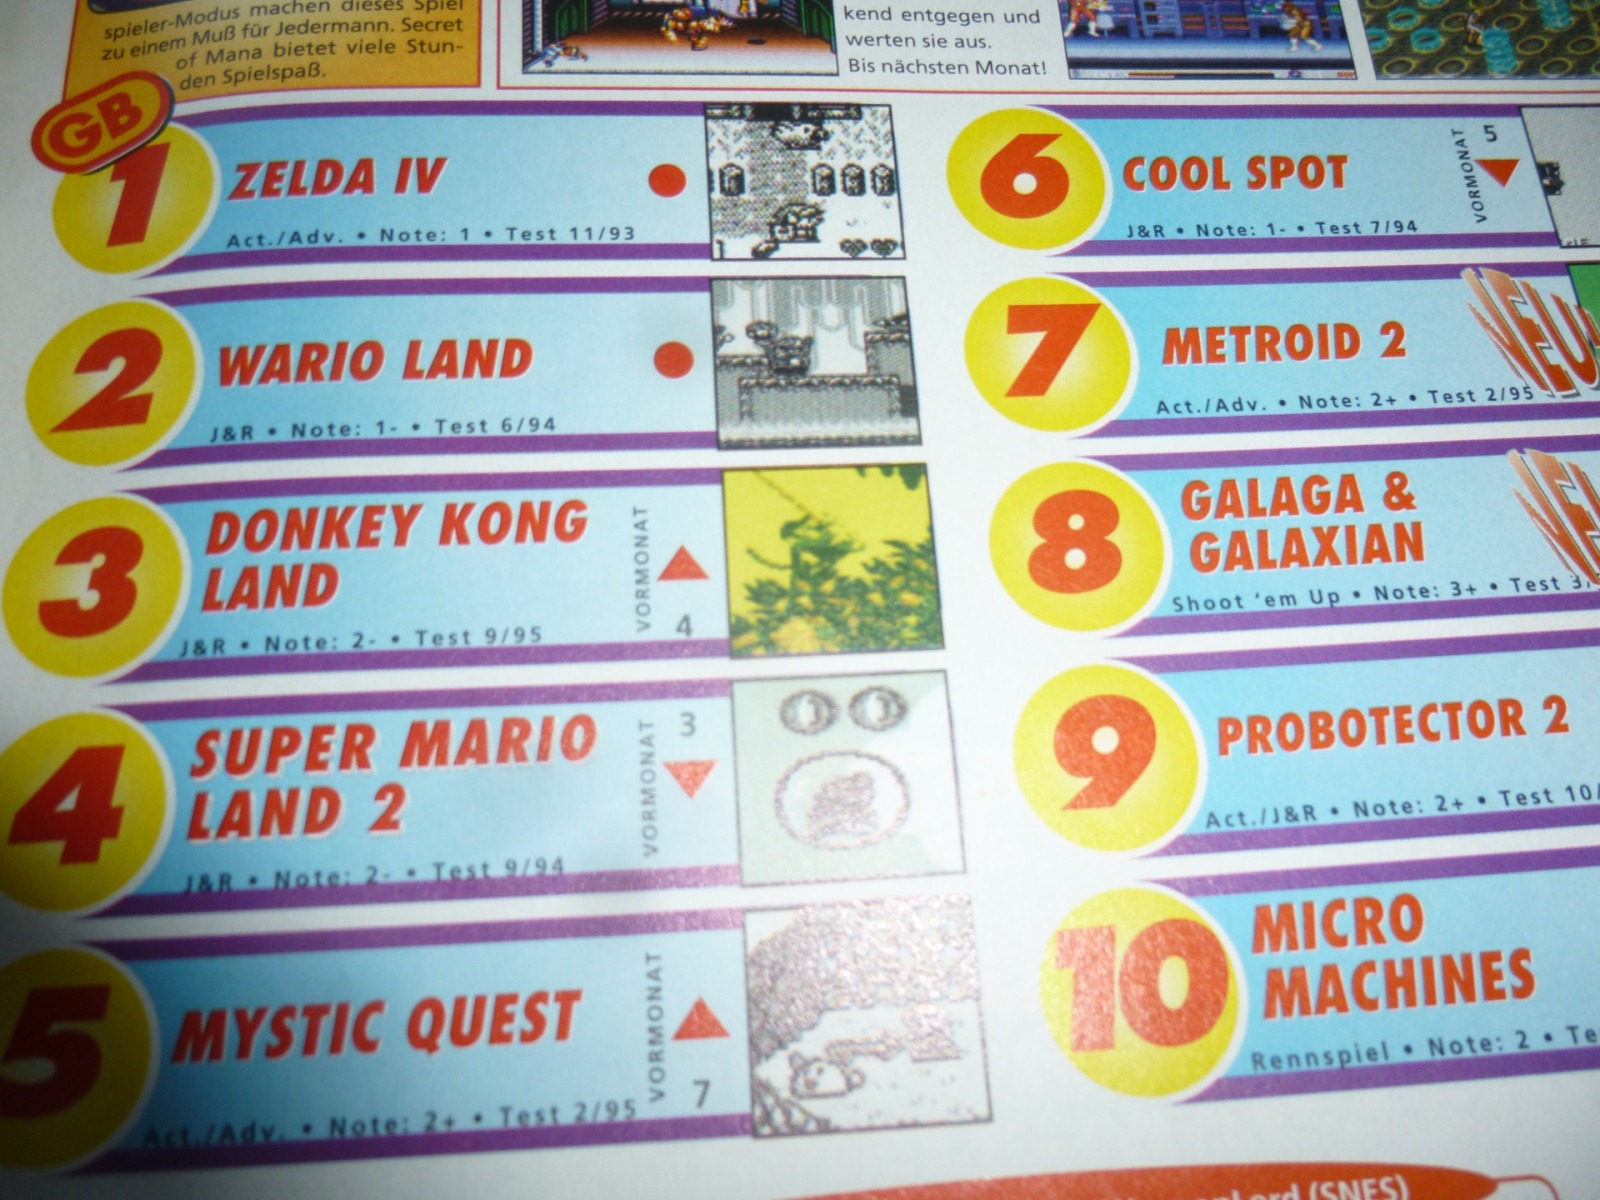 TOTAL Das unabhängige Magazin - 100 Nintendo - Ausgabe 3/96 1996 18